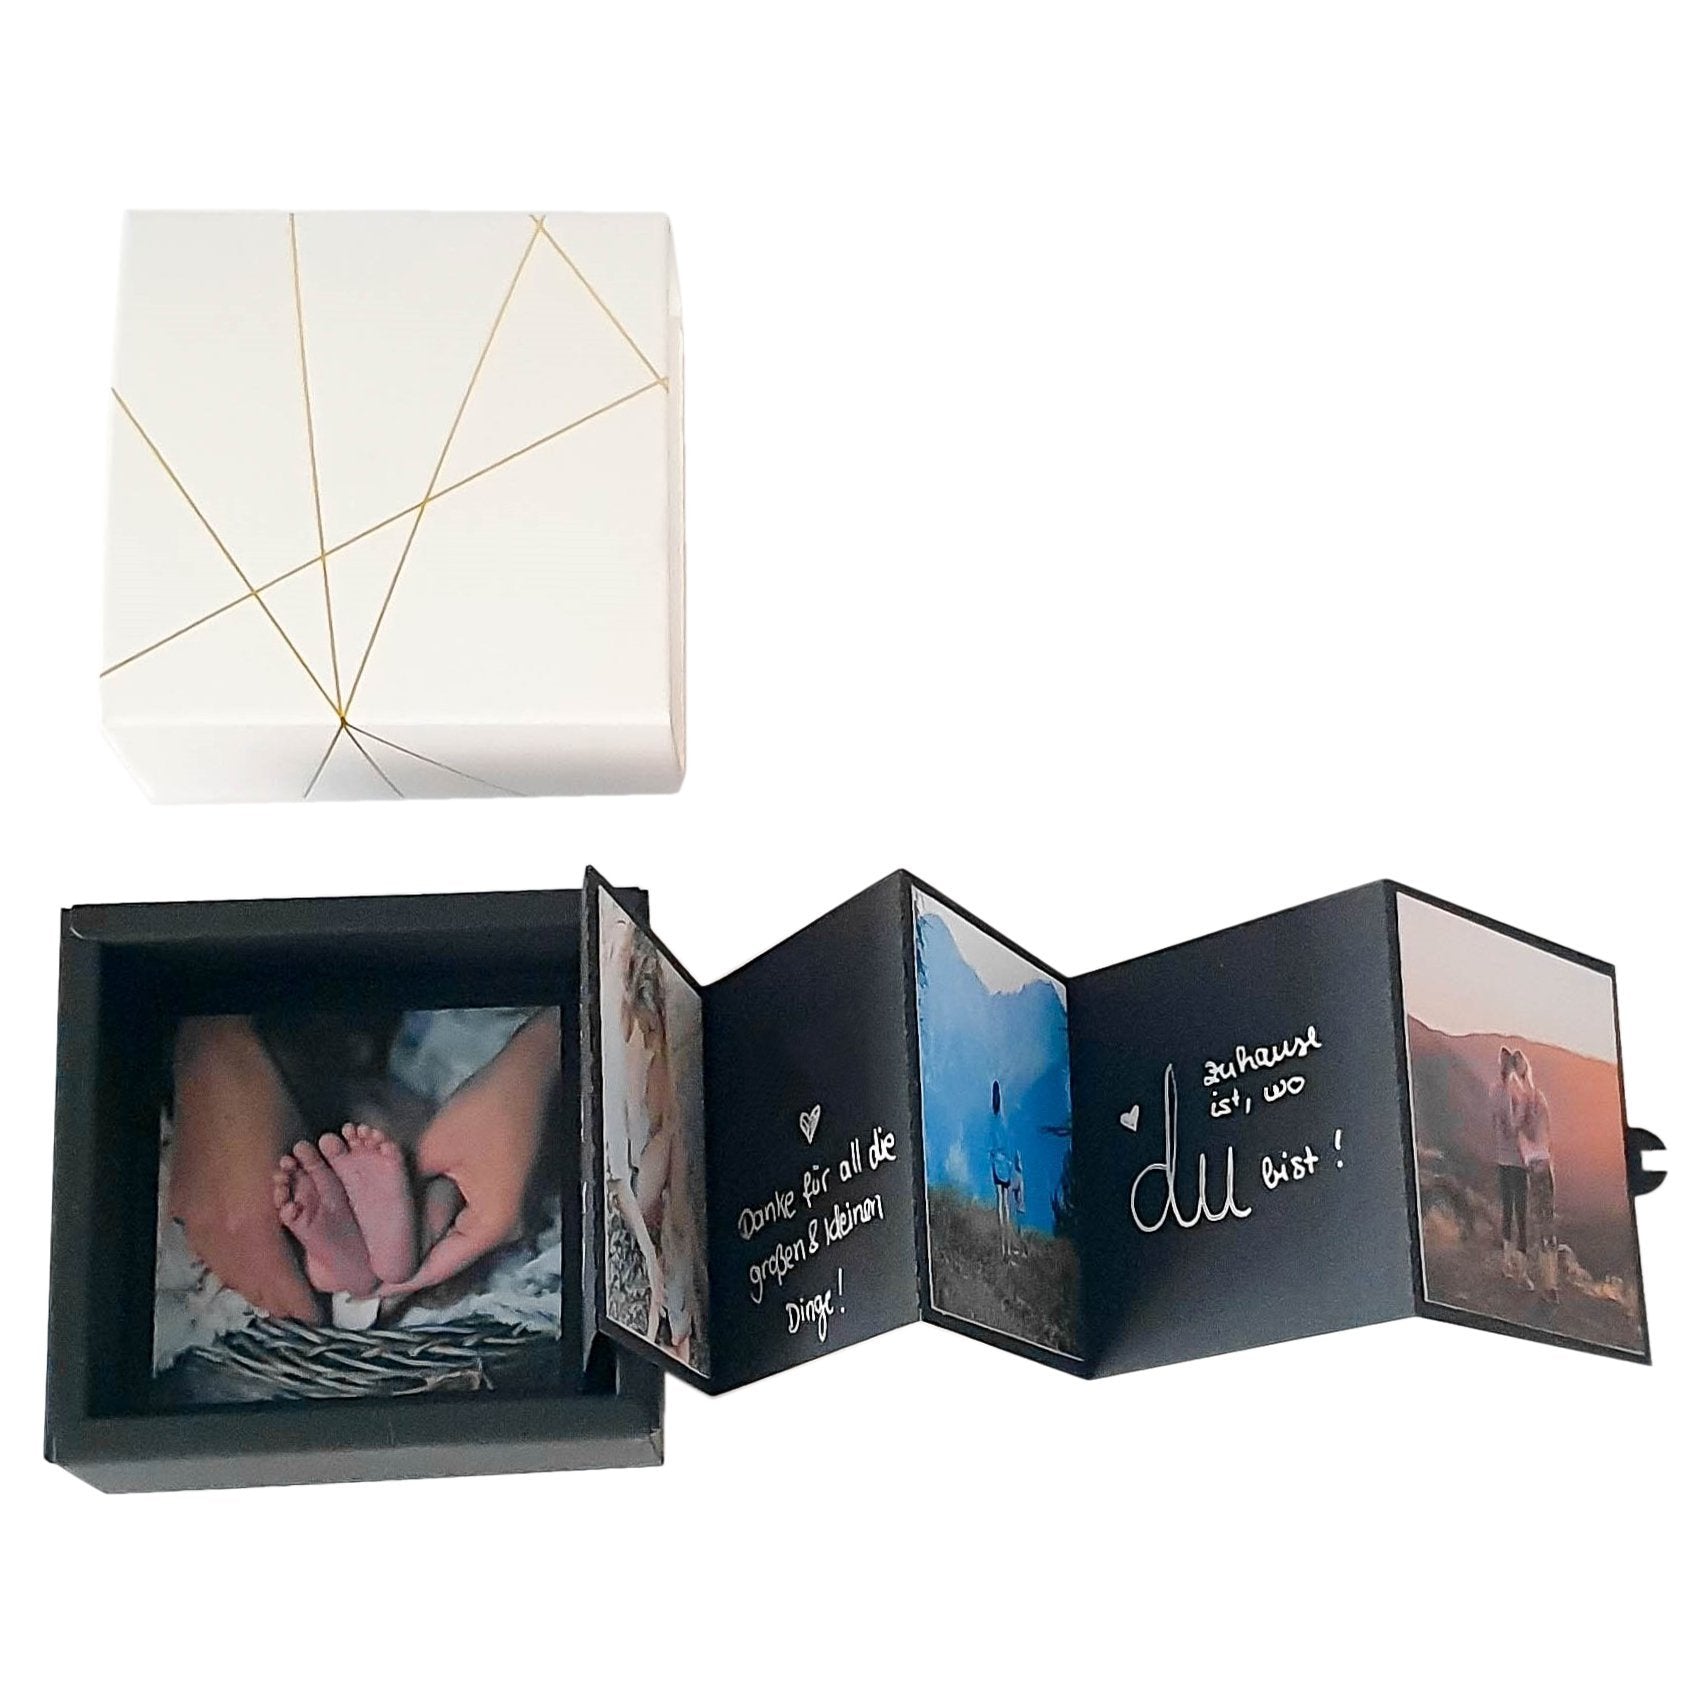 DIY Fotoalbum Geschenkbox Hochzeitstag - Personalisierte Geschenke zum Hochzeitstag - Suzu Papers